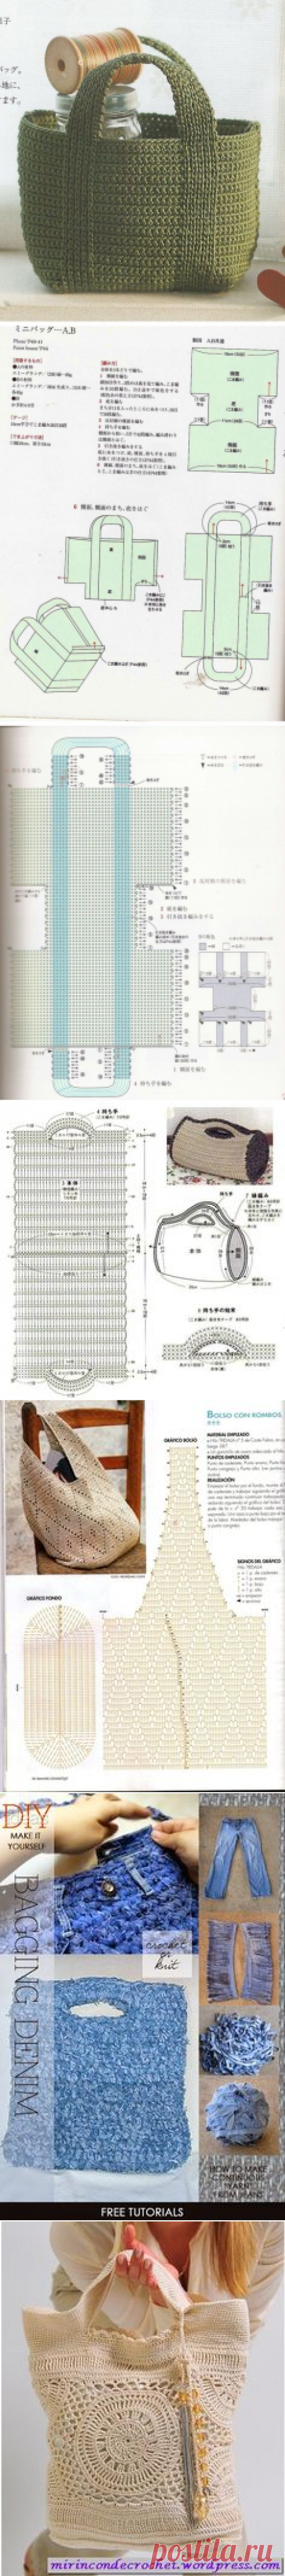 (1) Crochet Bag - Free Crochet Diagram - (roseviana.blogspot) | Bolsas y Canastos